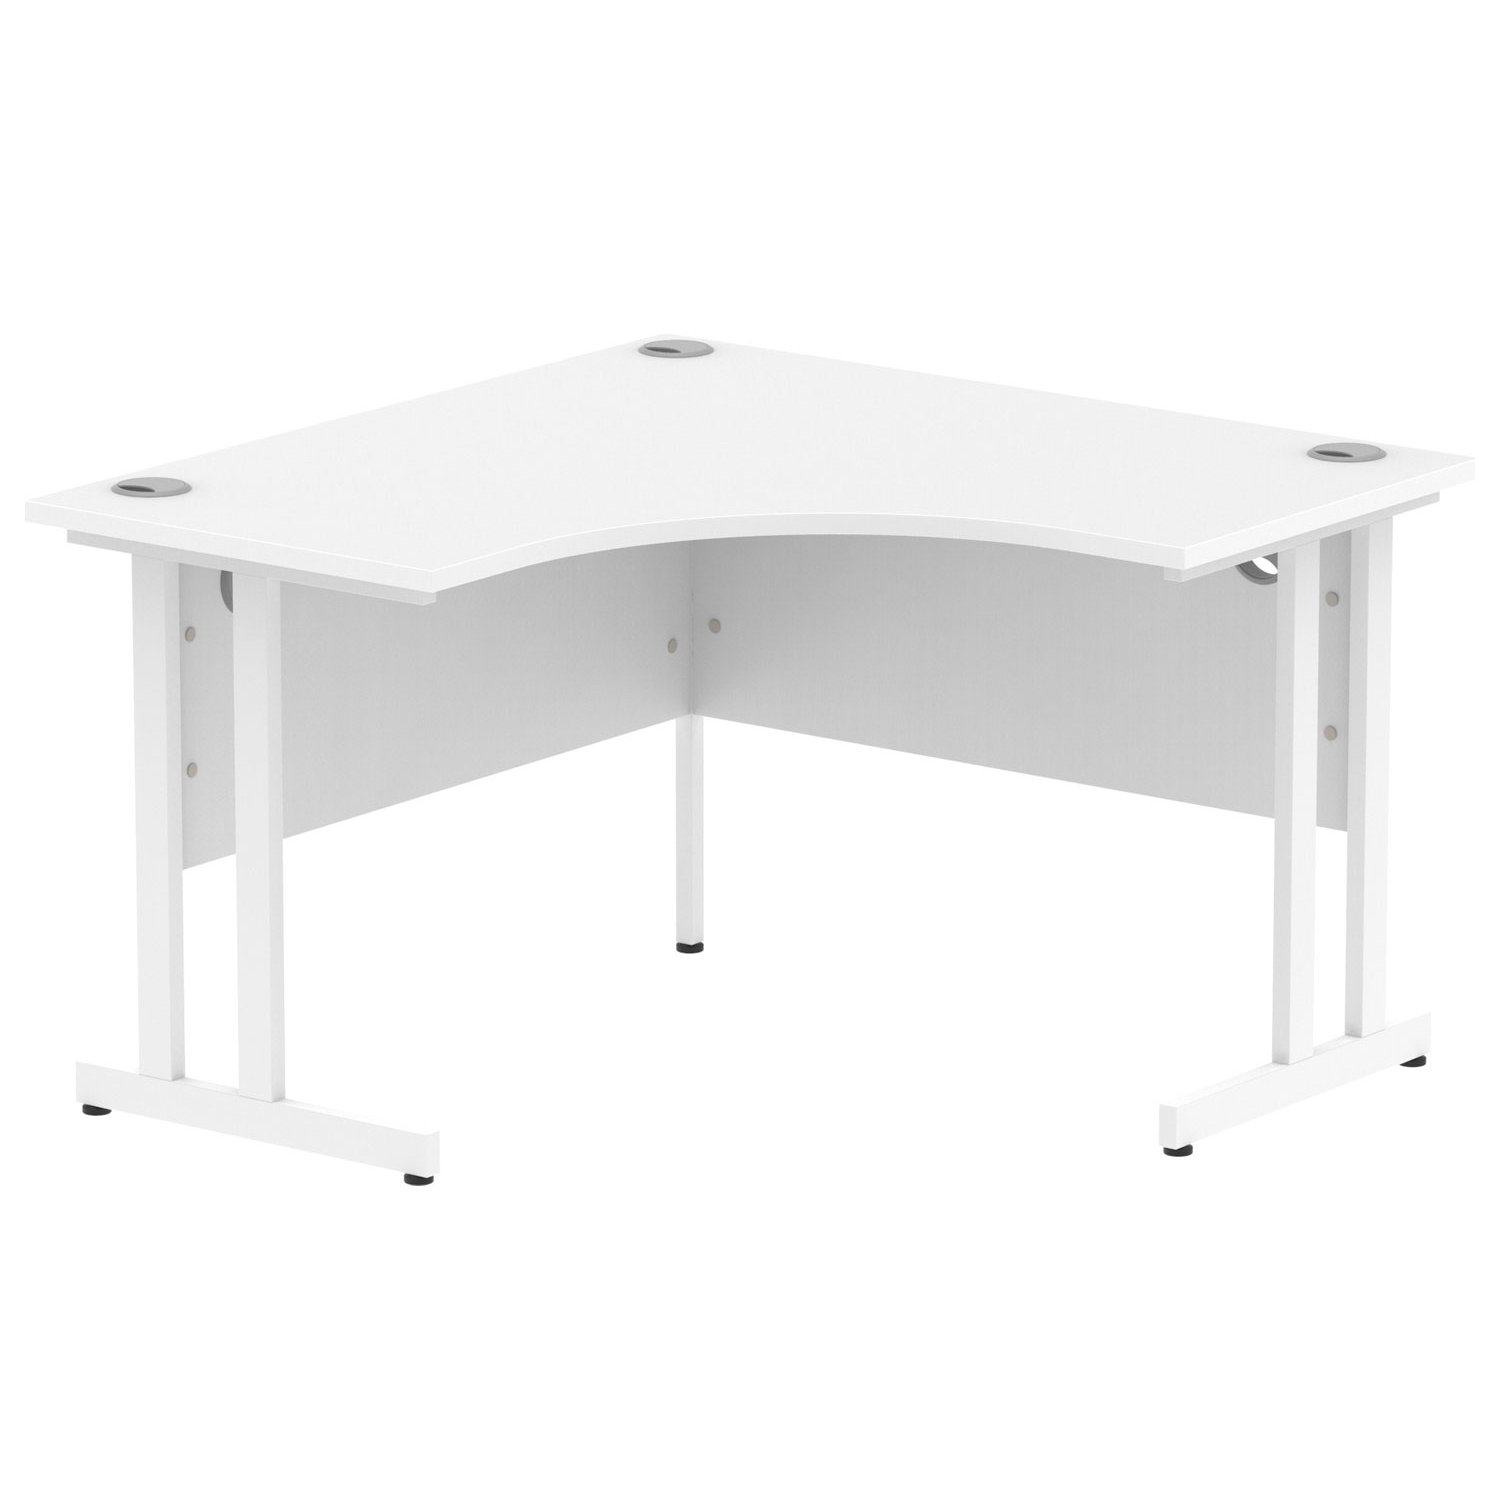 Vitali C-Leg Corner Desk (White Legs), White